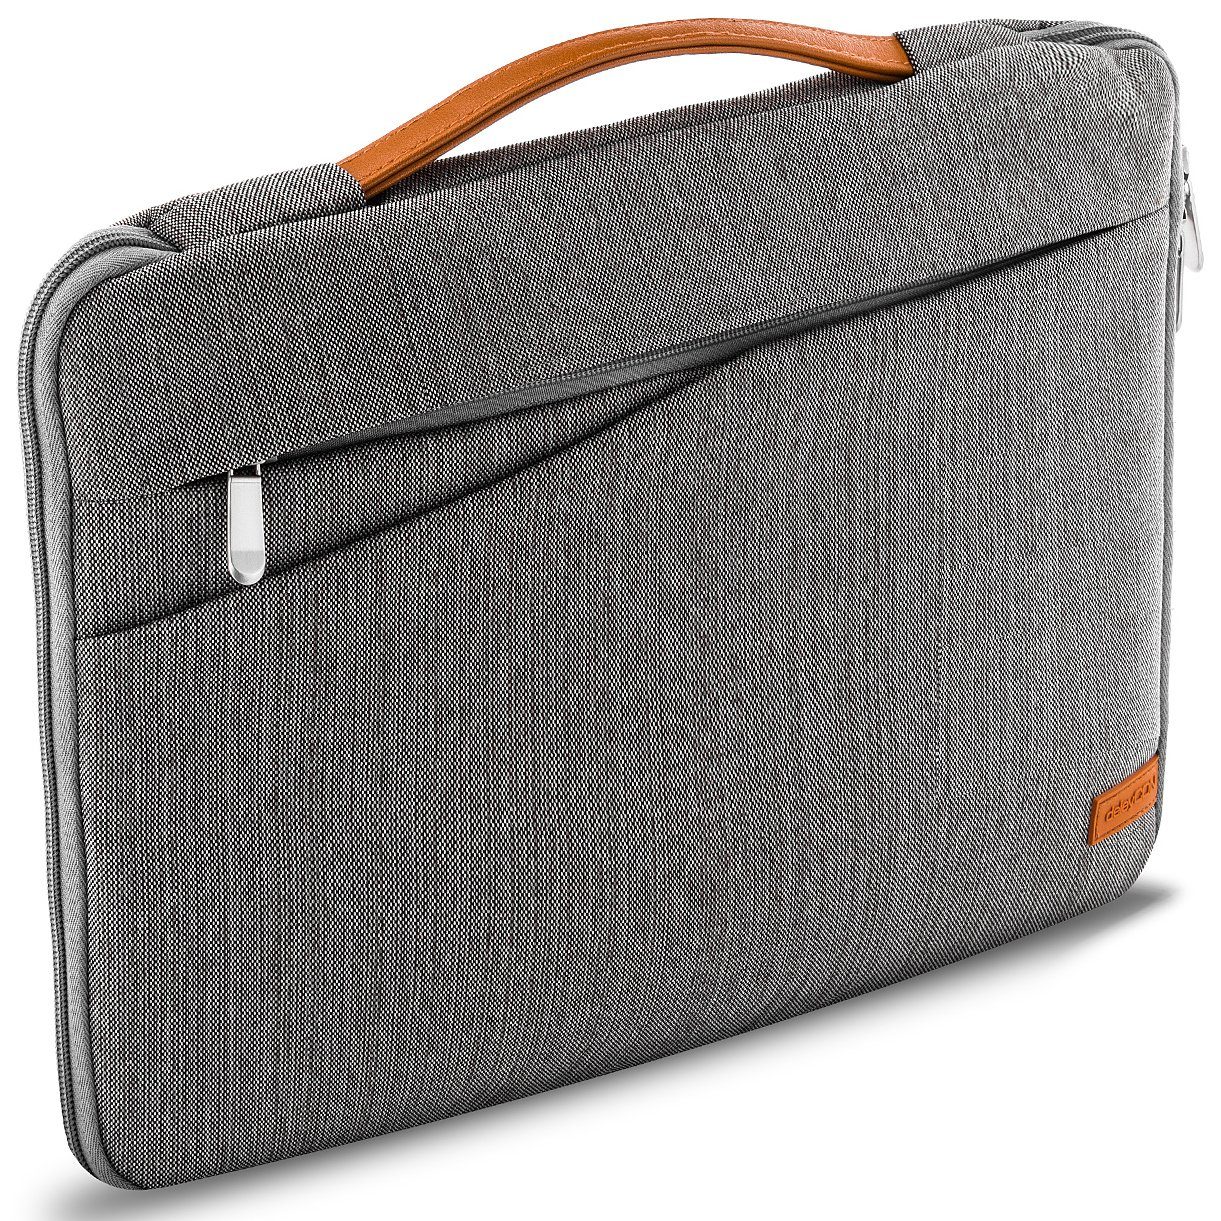 deleyCON Businesstasche deleyCON Notebooktasche für Notebook / Laptop bis 17,3" (43,94cm) - | Businesstaschen